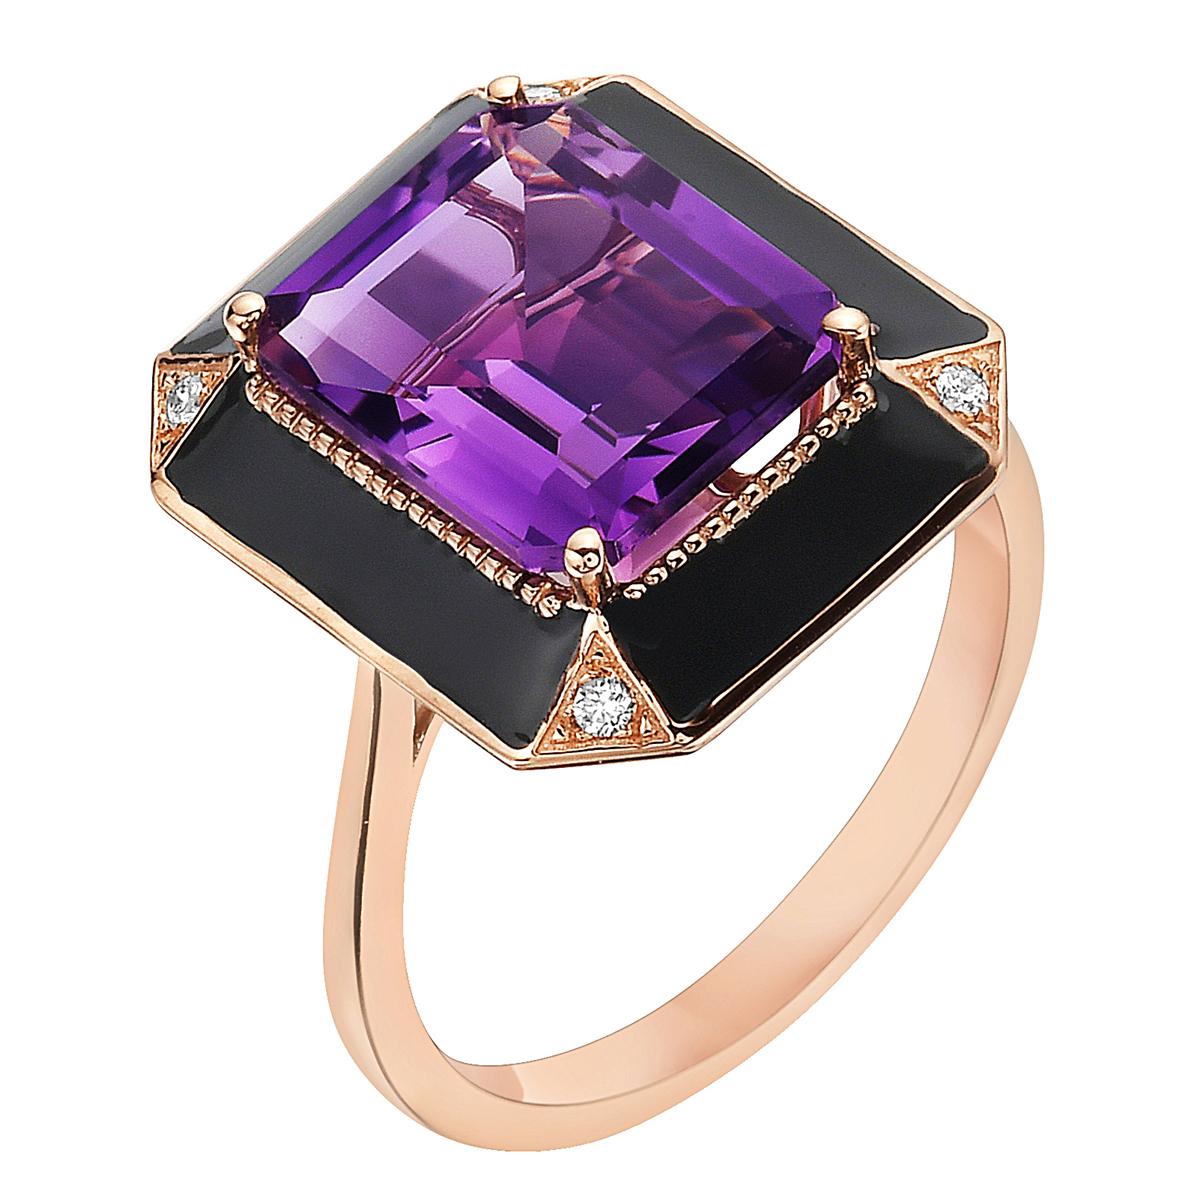 Mit diesem exquisiten Amethyst-Halbedelsteinring aus Roségold mit Diamanten stehen Stil und Glamour im Mittelpunkt. Dieser 18-karätige Ring mit Smaragdschliff besteht aus 4,04 Gramm Gold, 1 Amethyst mit insgesamt 3,87 Karat, ist von schwarzer